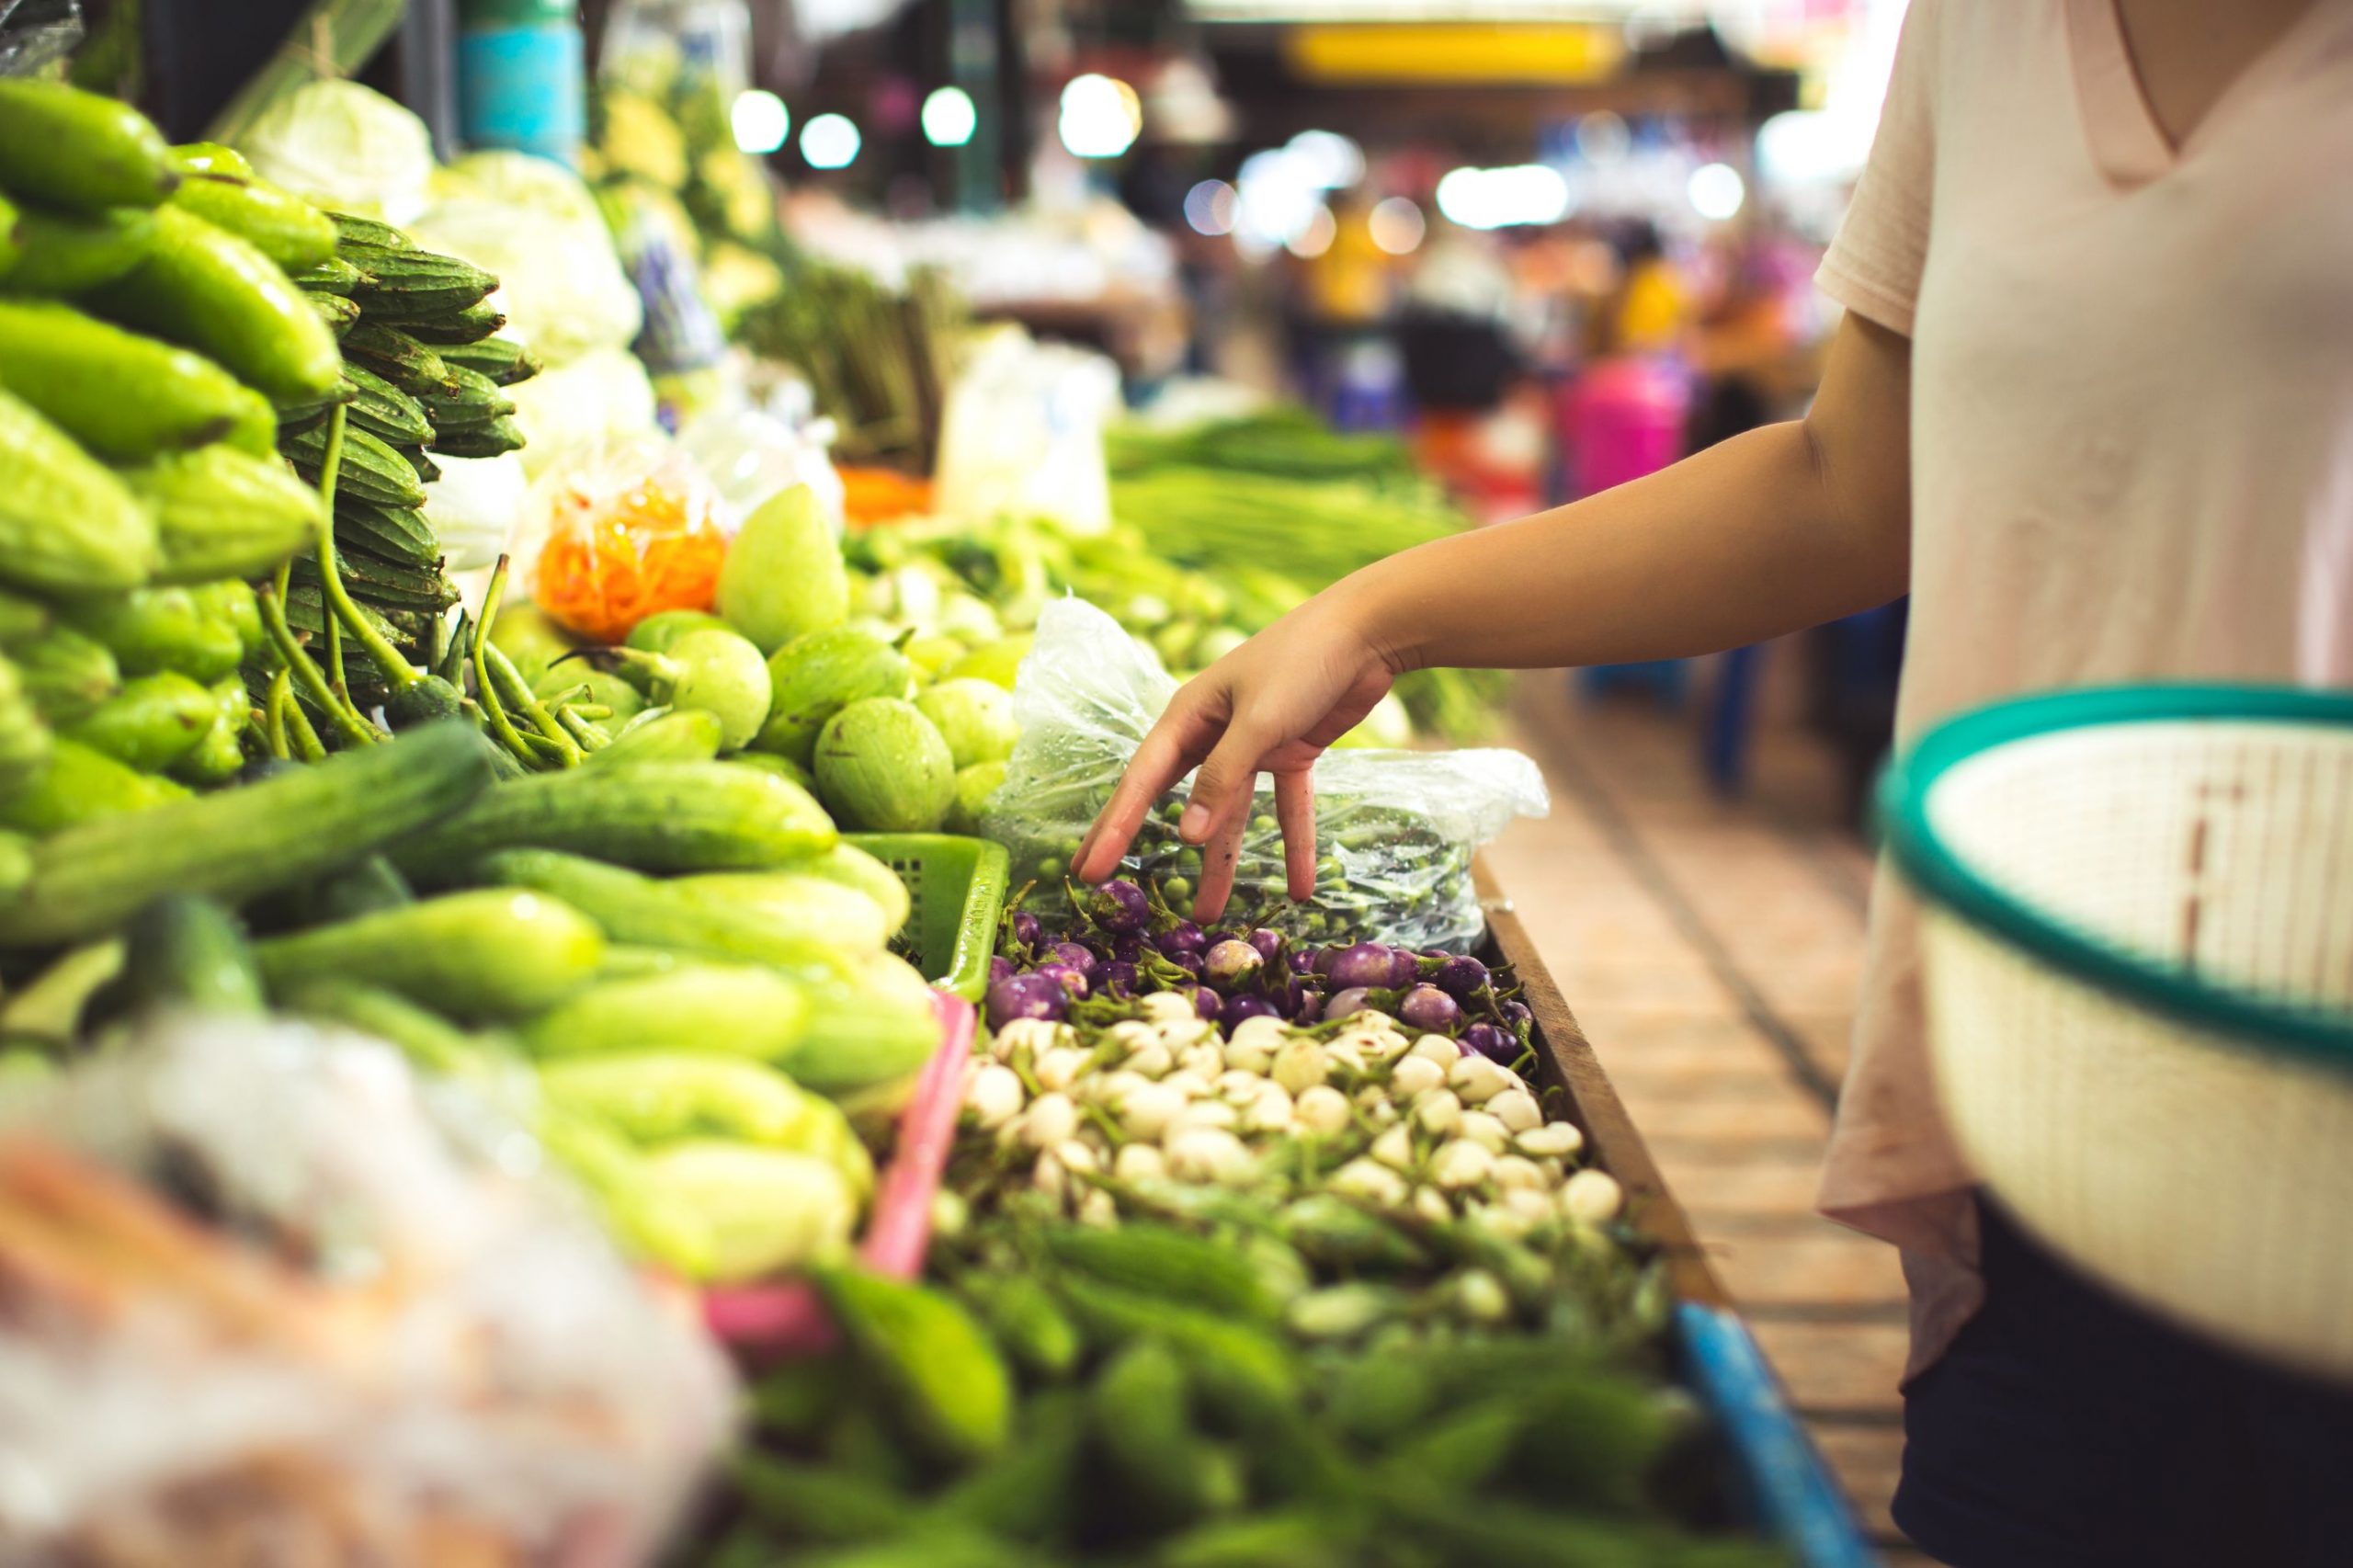 “Mercado de orgânicos precisa de diversidade e maior eficiência”, afirma especialista